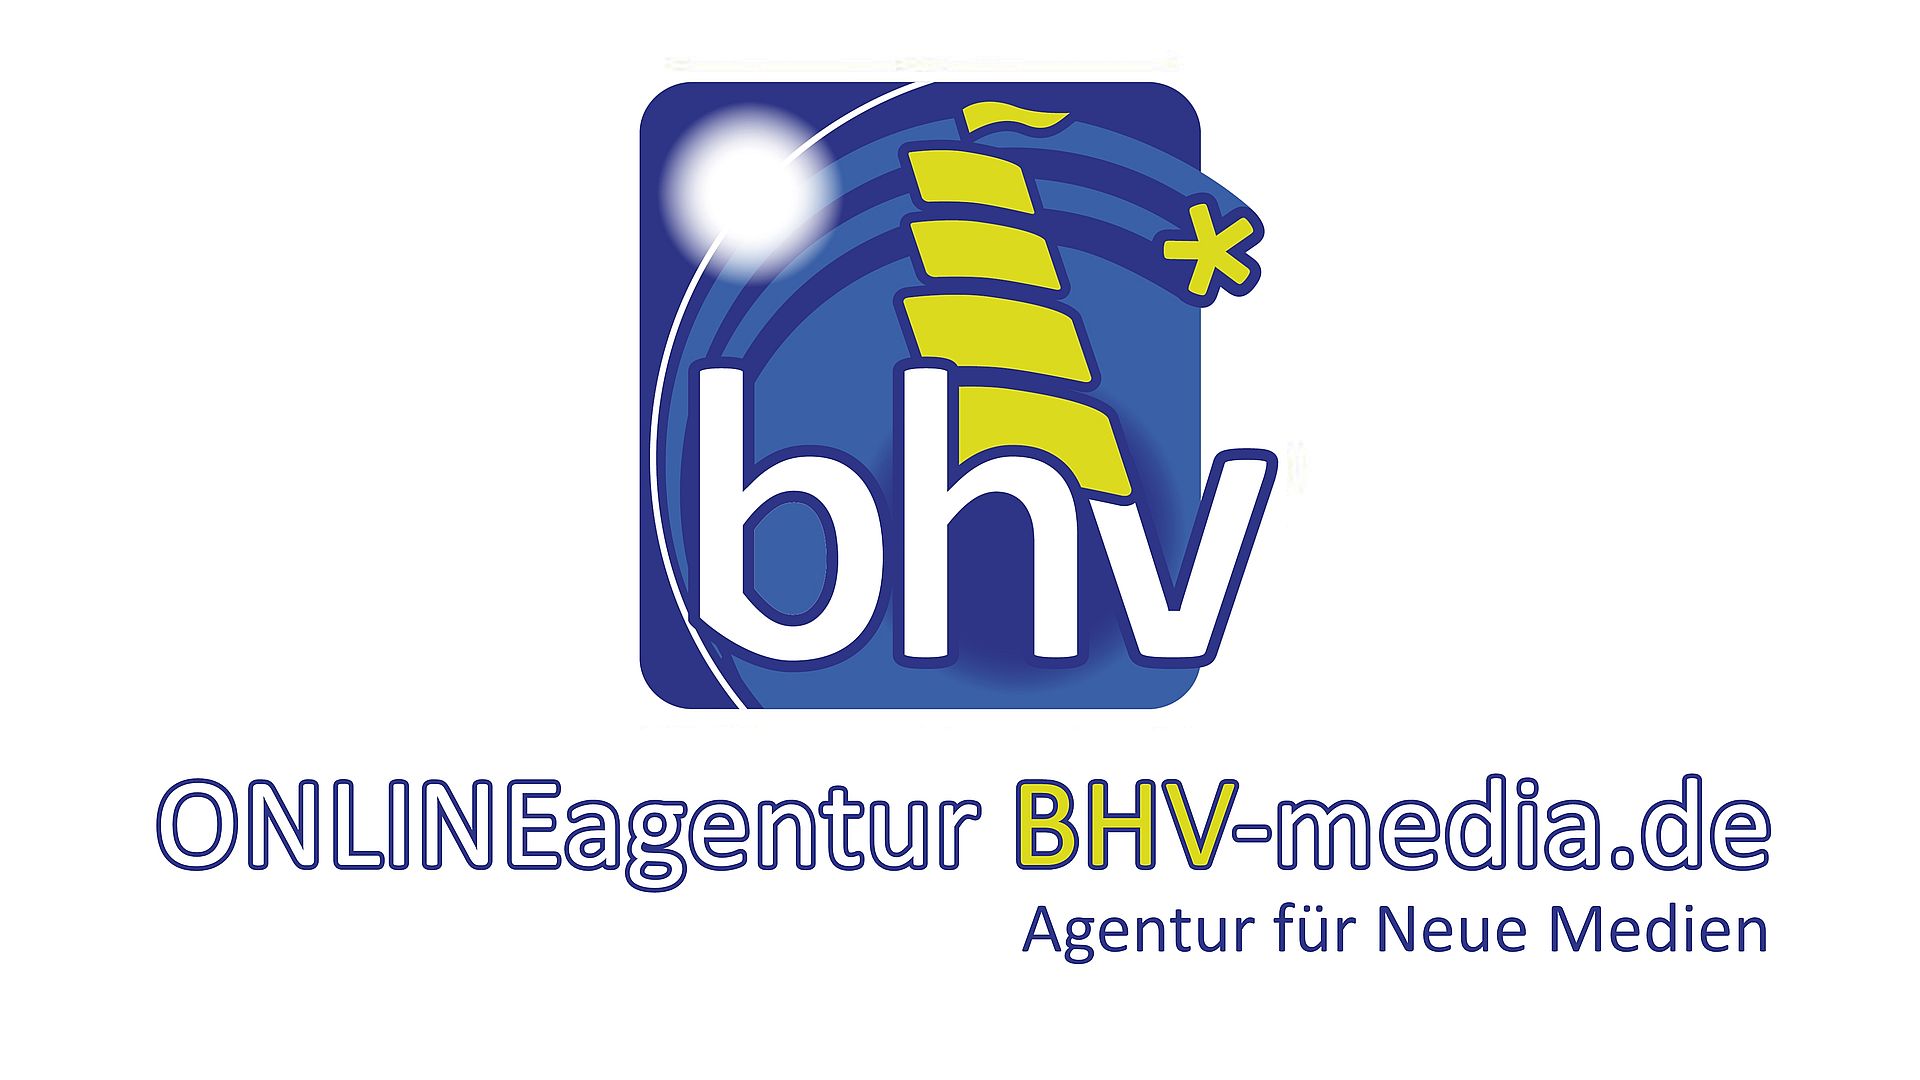 ONLINEagentur BHV-media.de